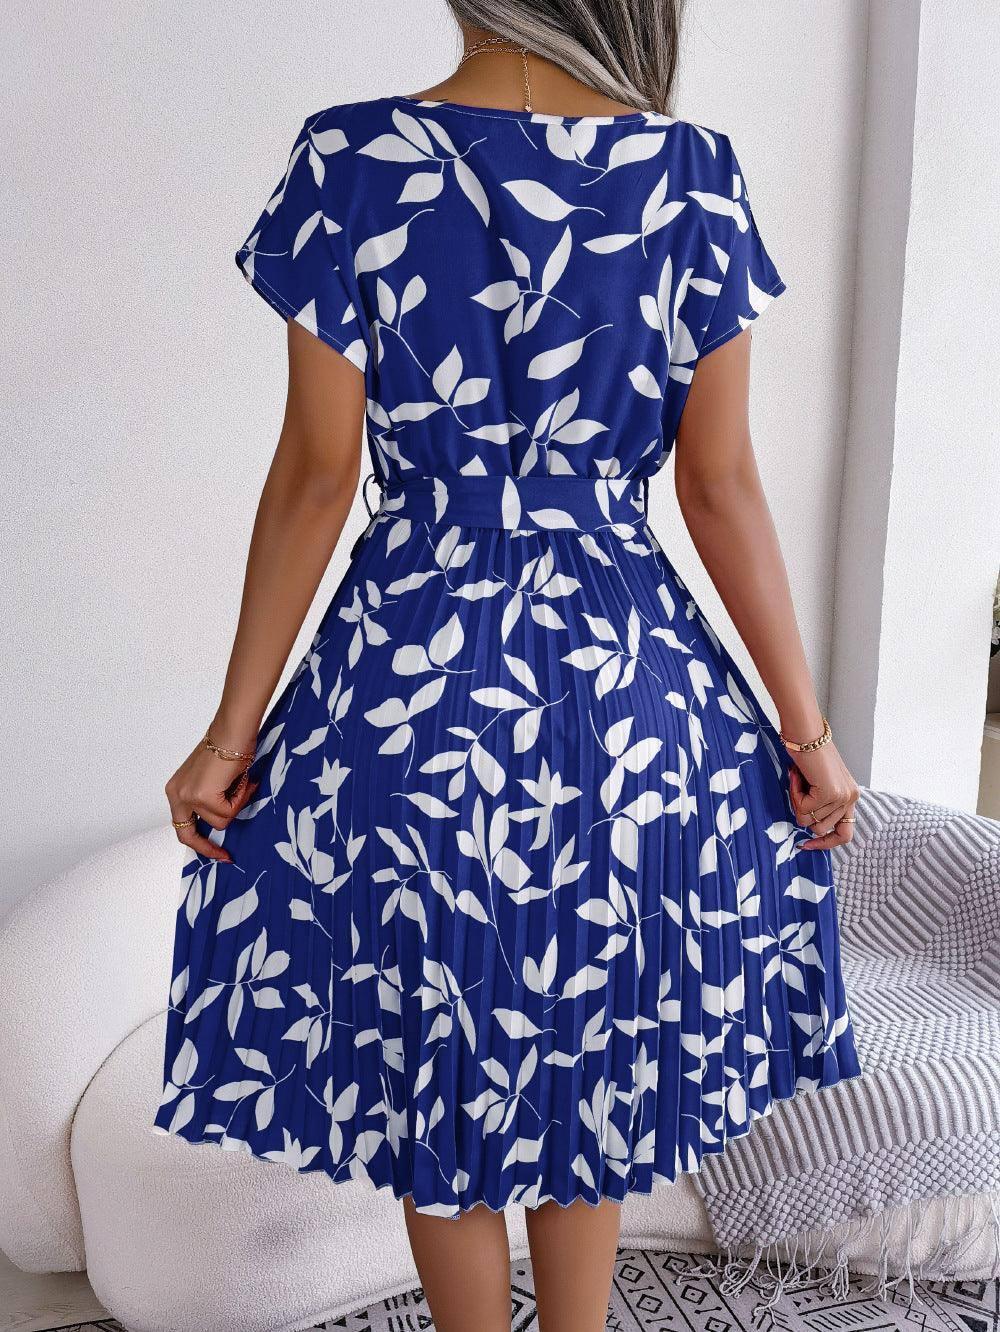 Leaf Print Dress Women Short Sleeve Lace-up Skirt Summer-3